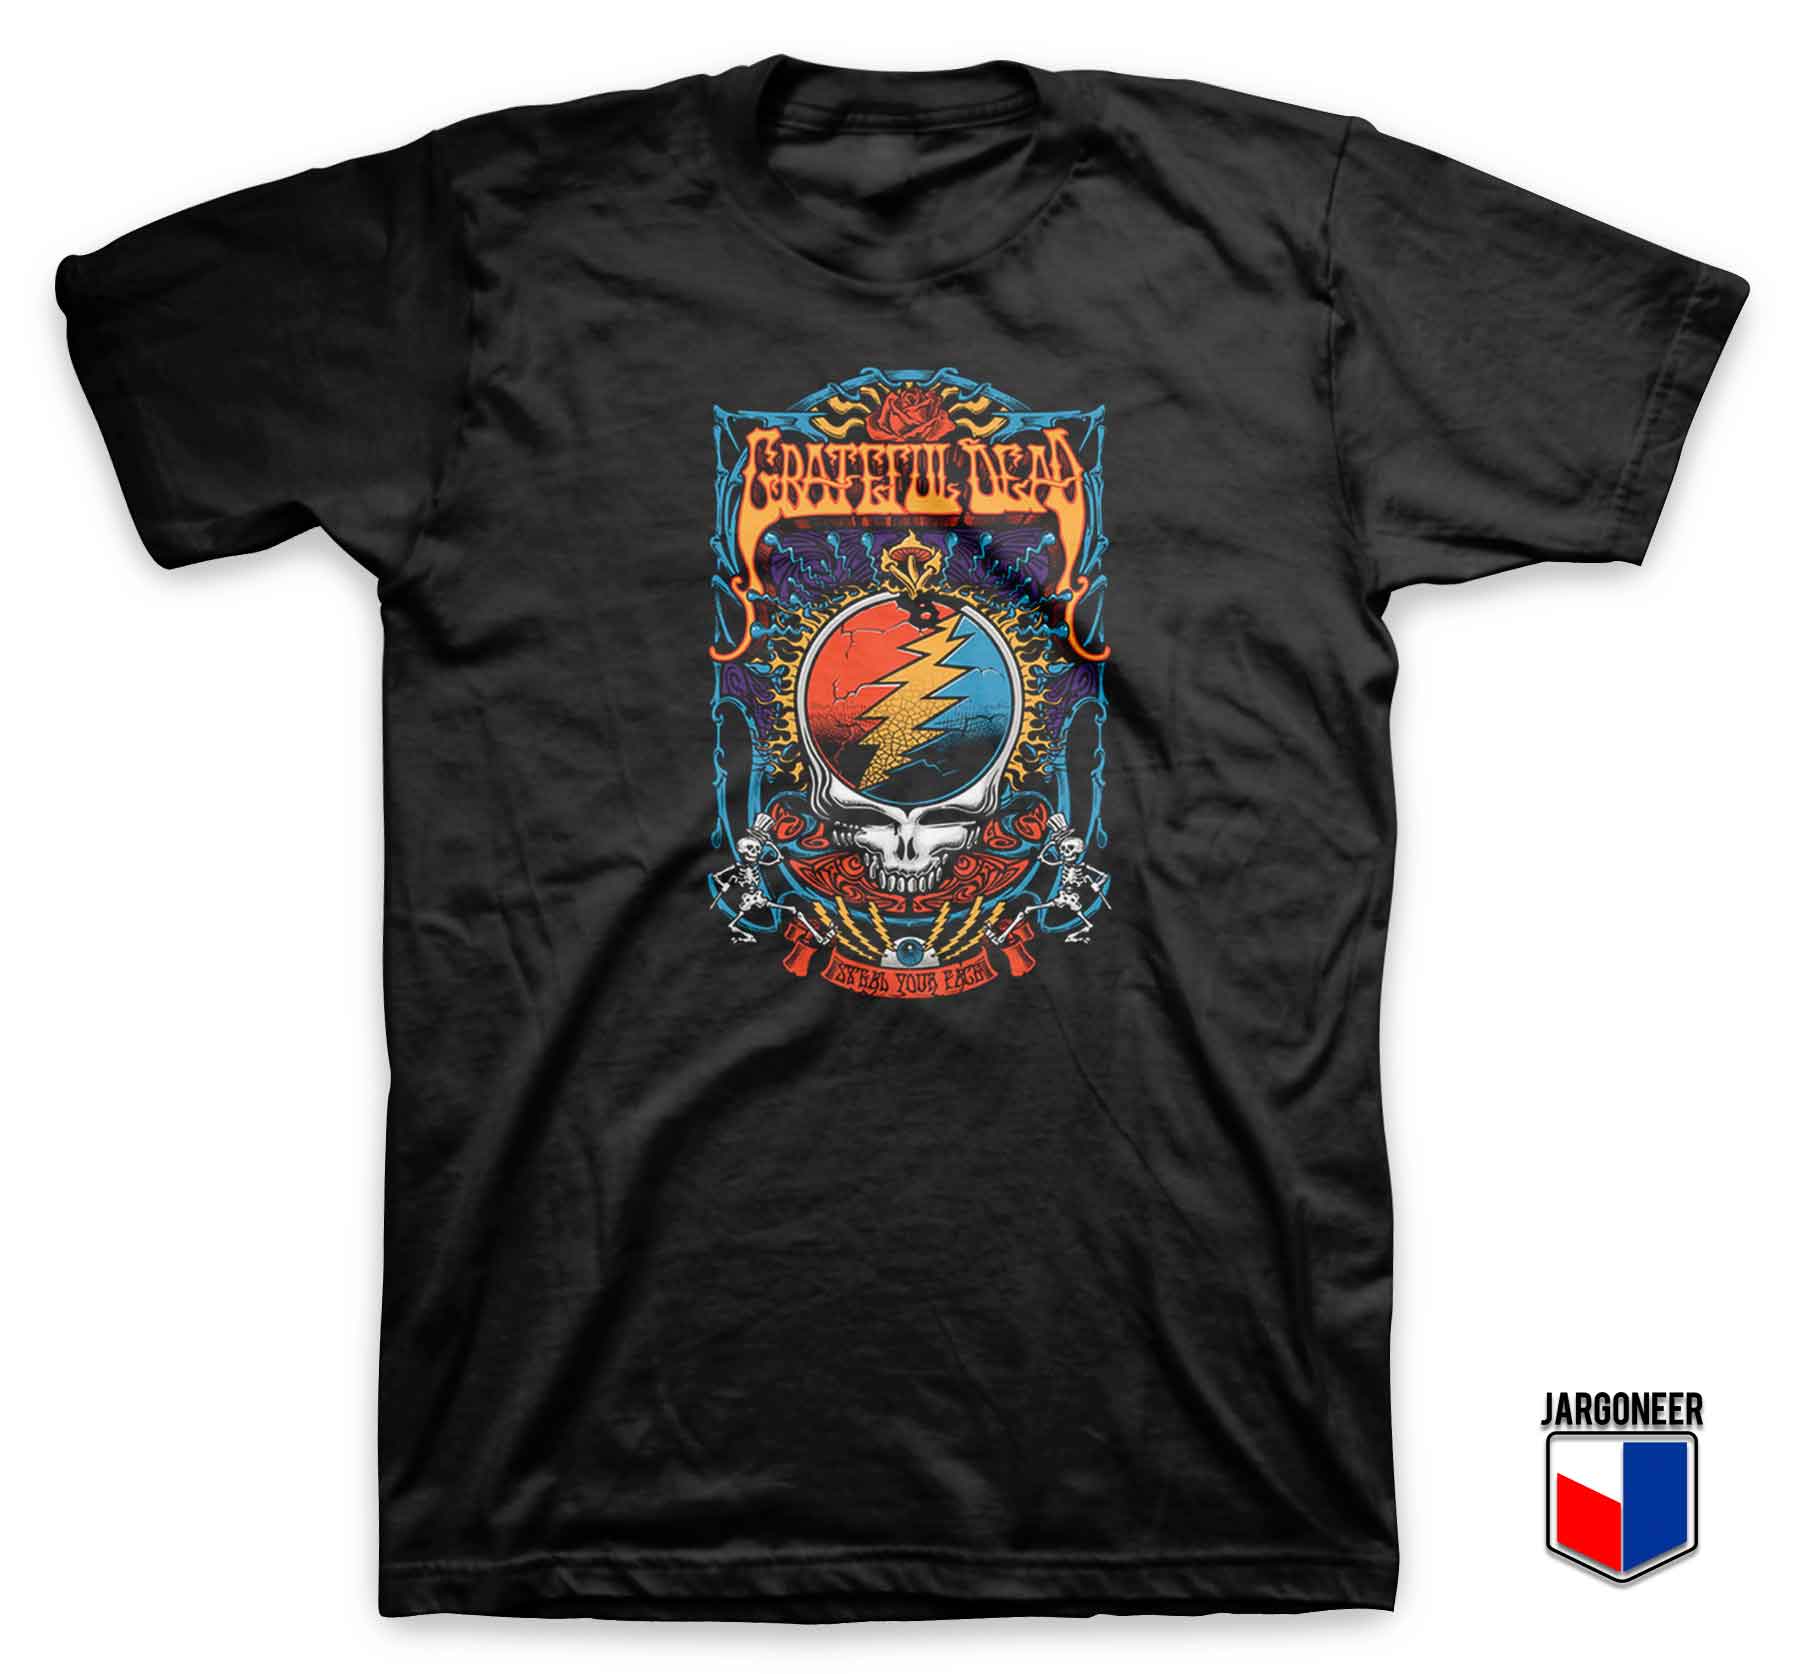 Grateful Dead Steal Your Trippy - Shop Unique Graphic Cool Shirt Designs